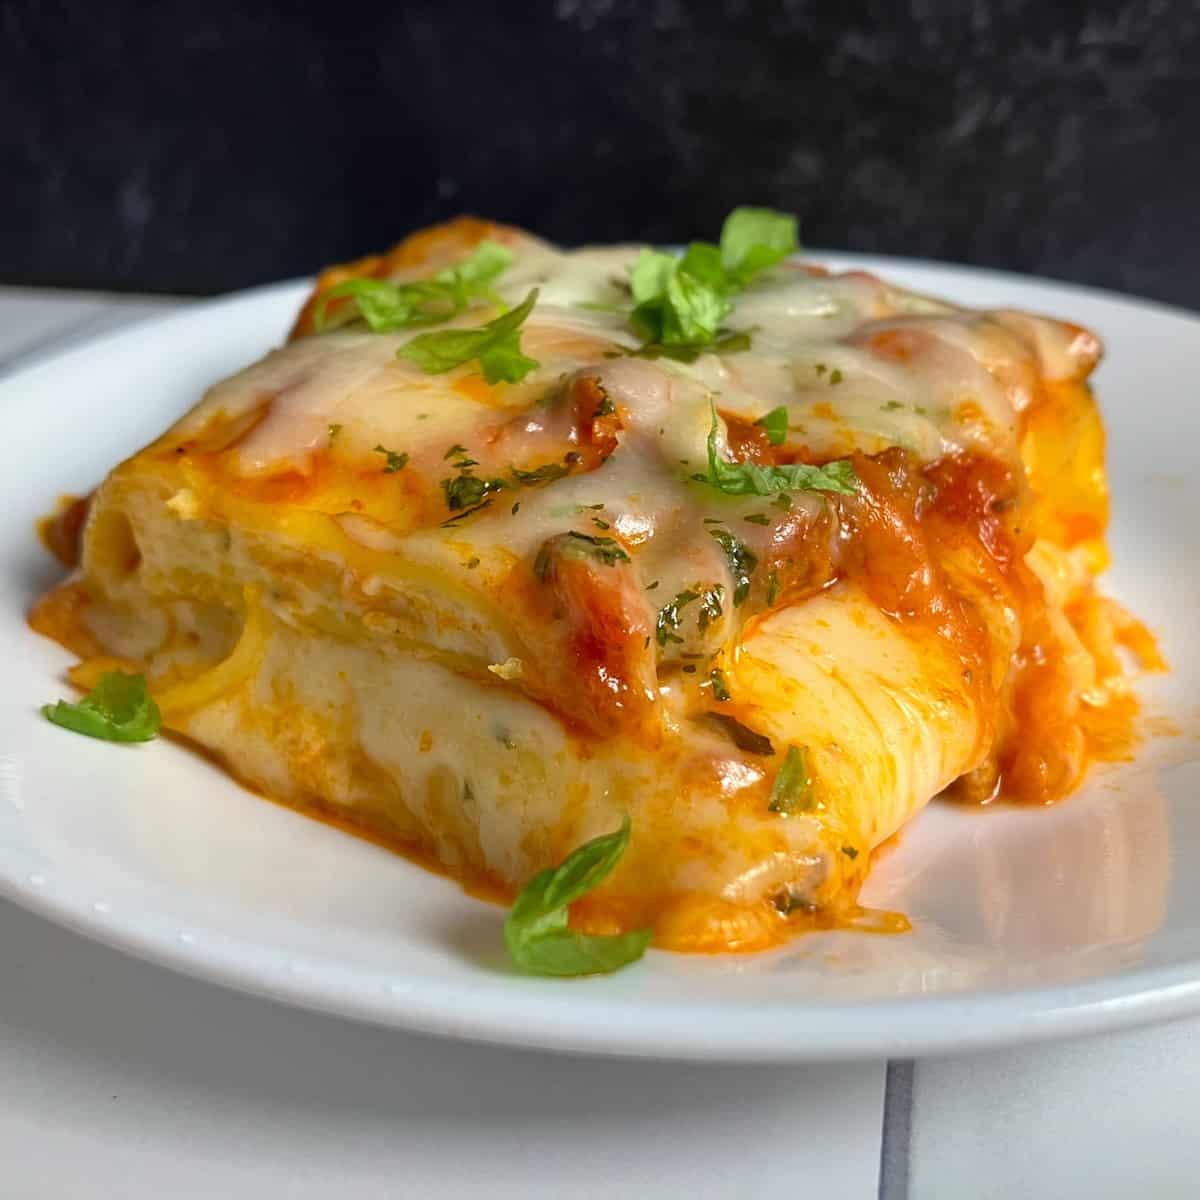 bake lasagna at 350